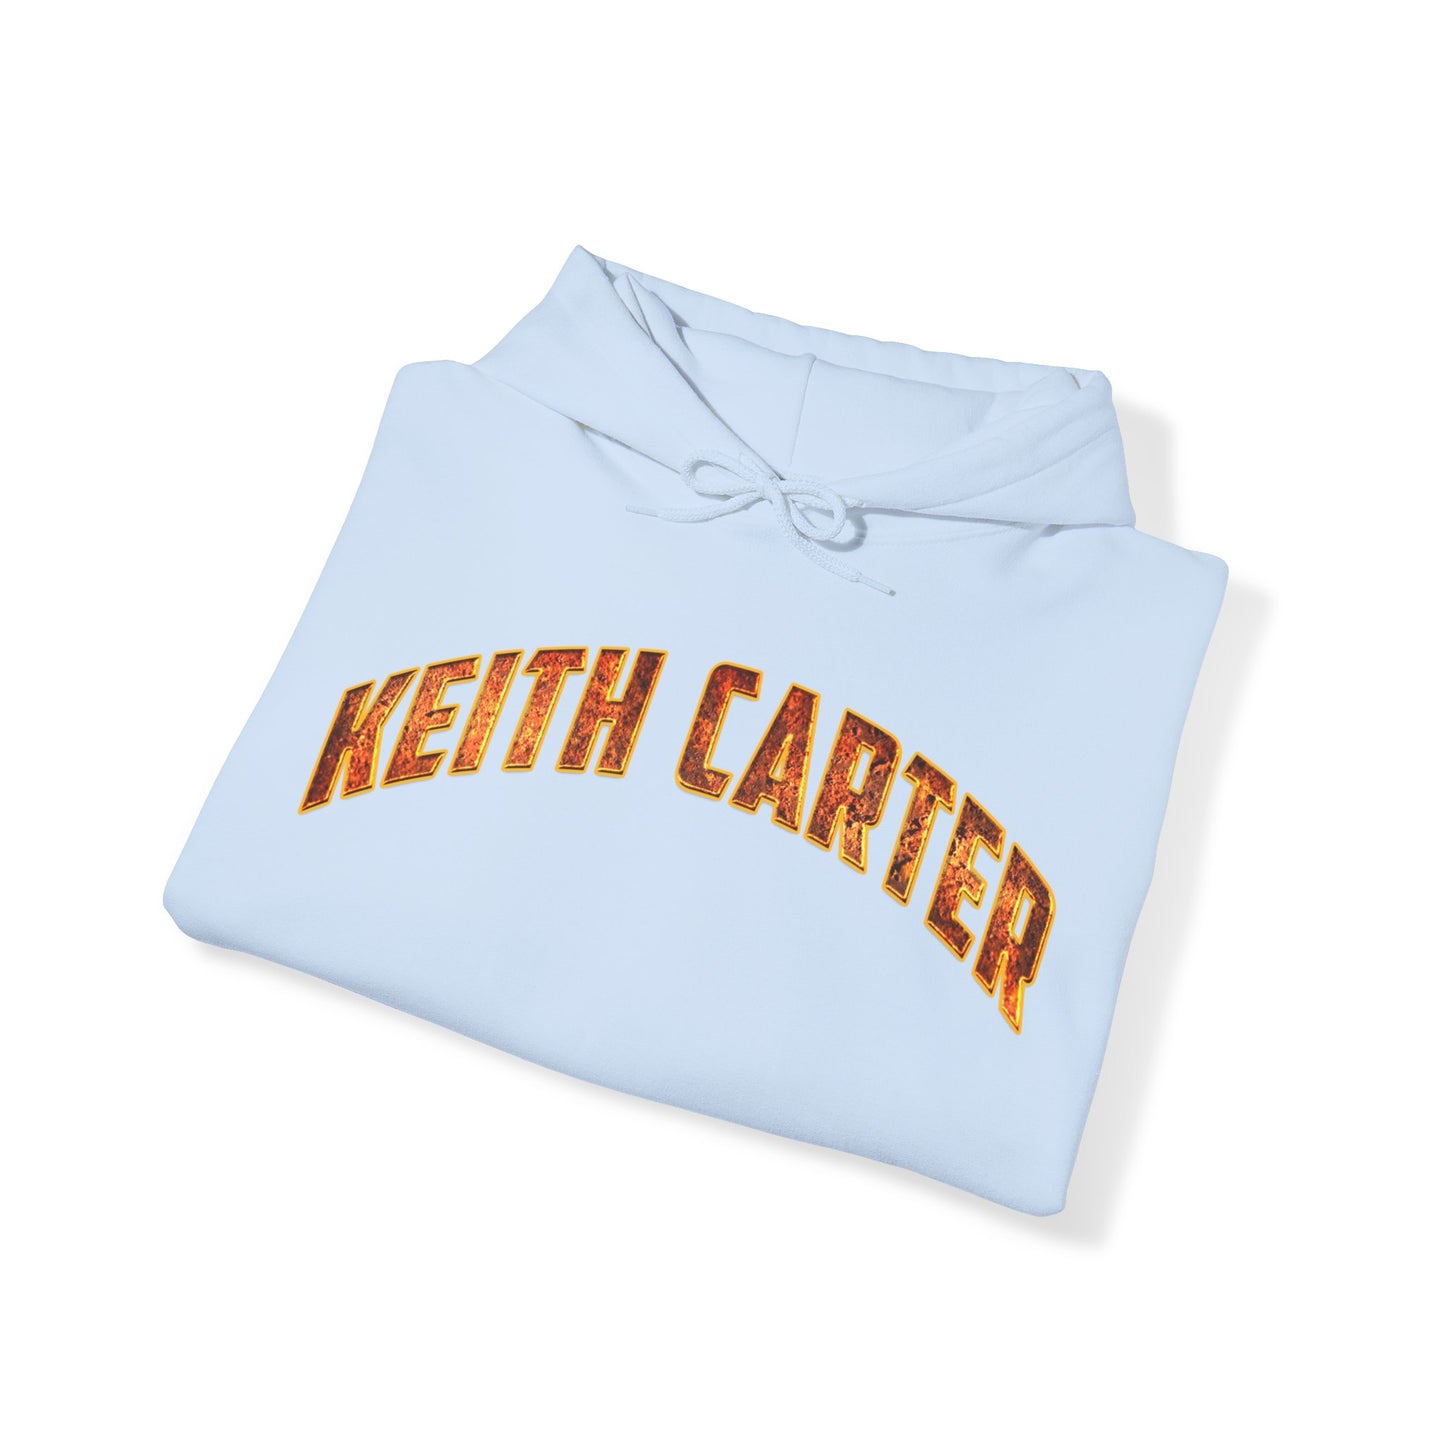 Keith Carter Hoodie